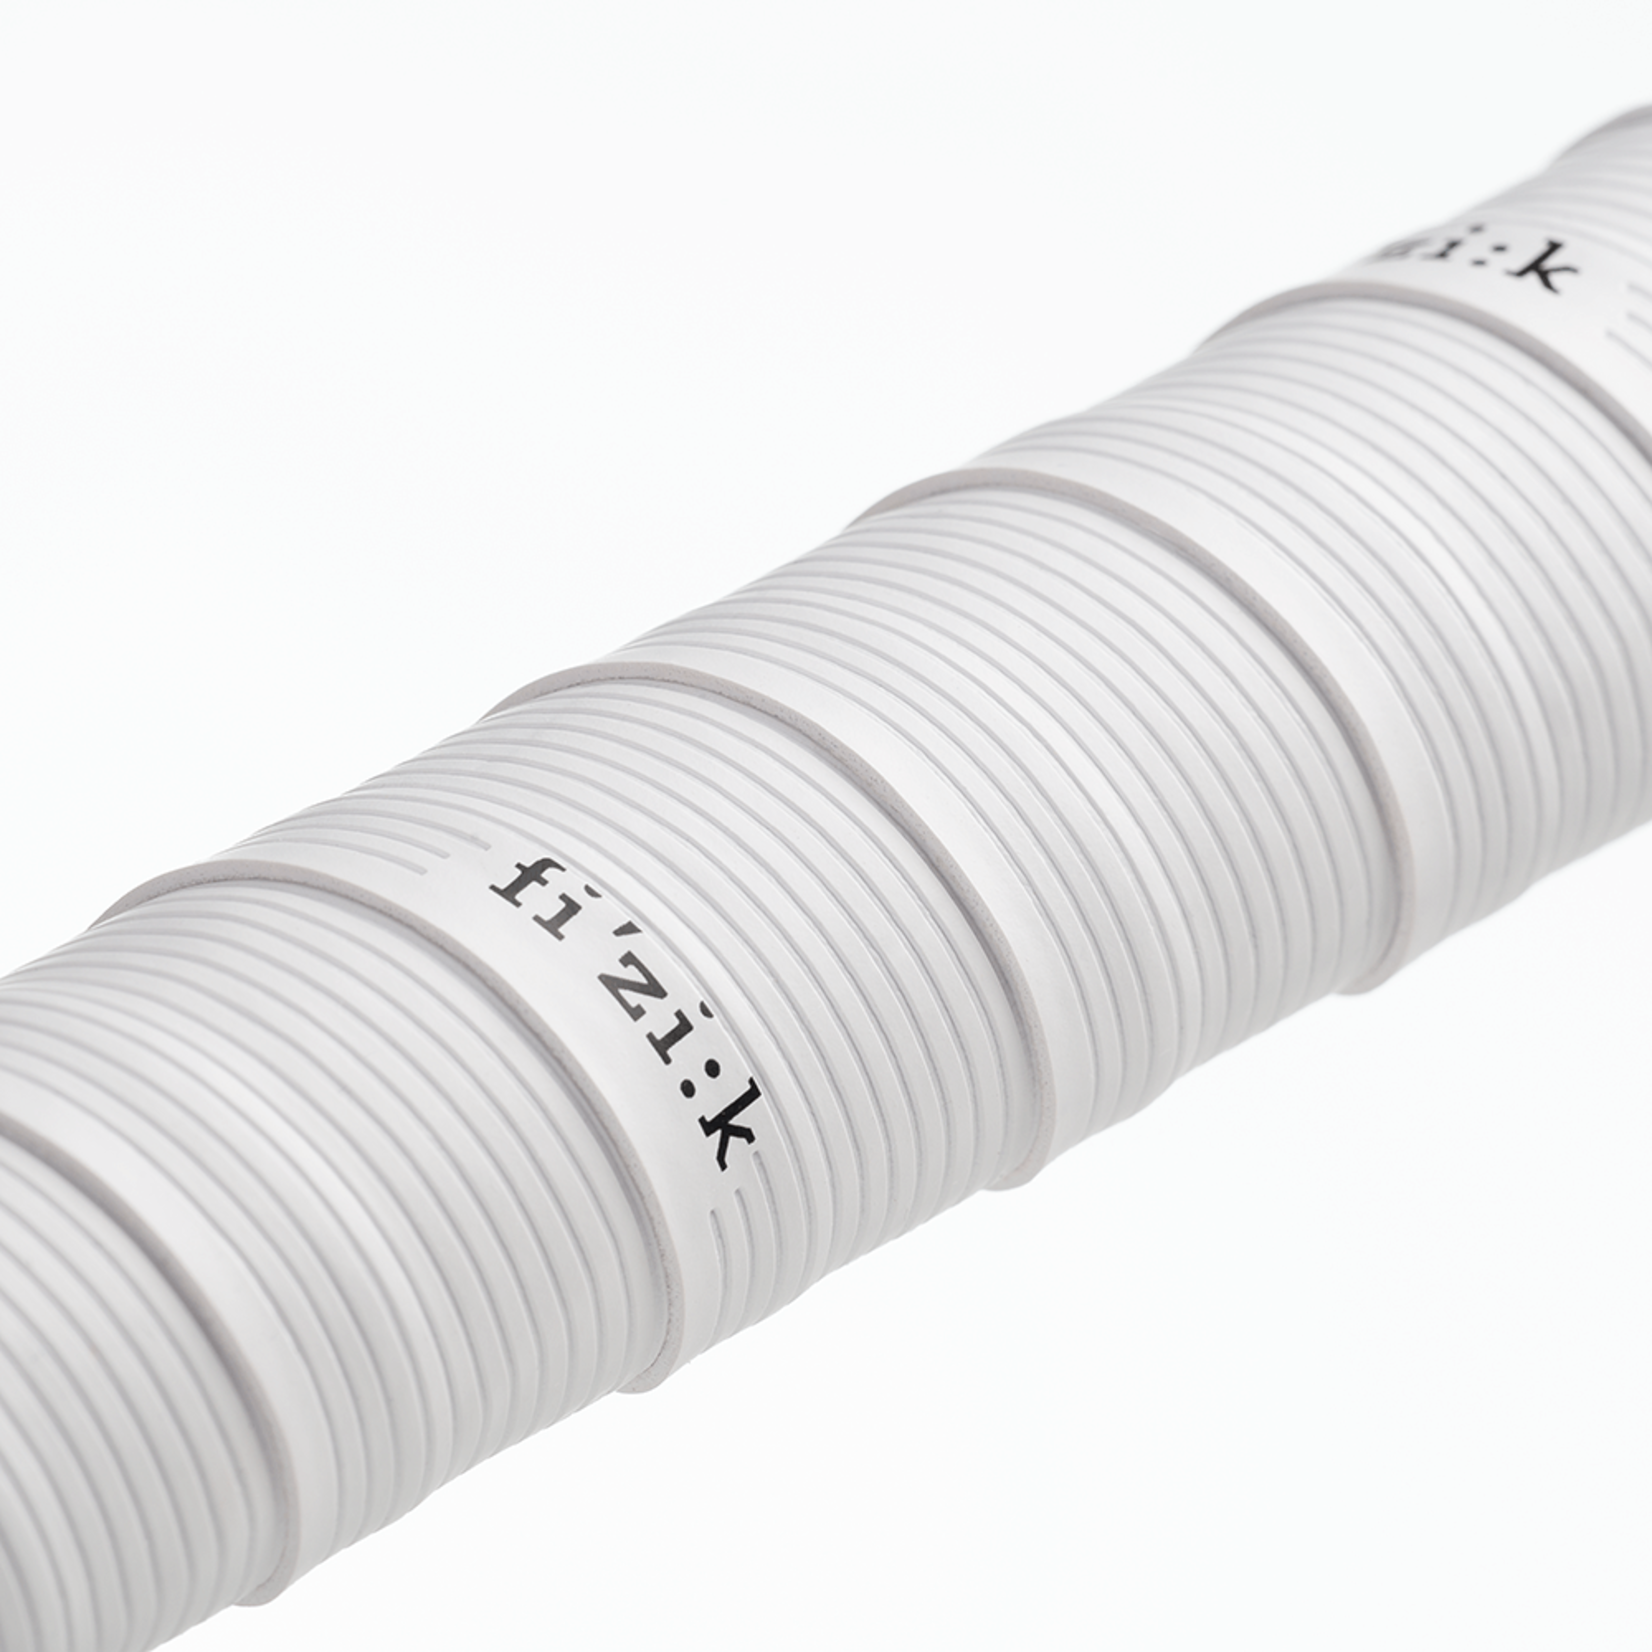 Fizik Fizik Vento Microtex Tacky 2mm Road Bar Tape - Length 2350mm